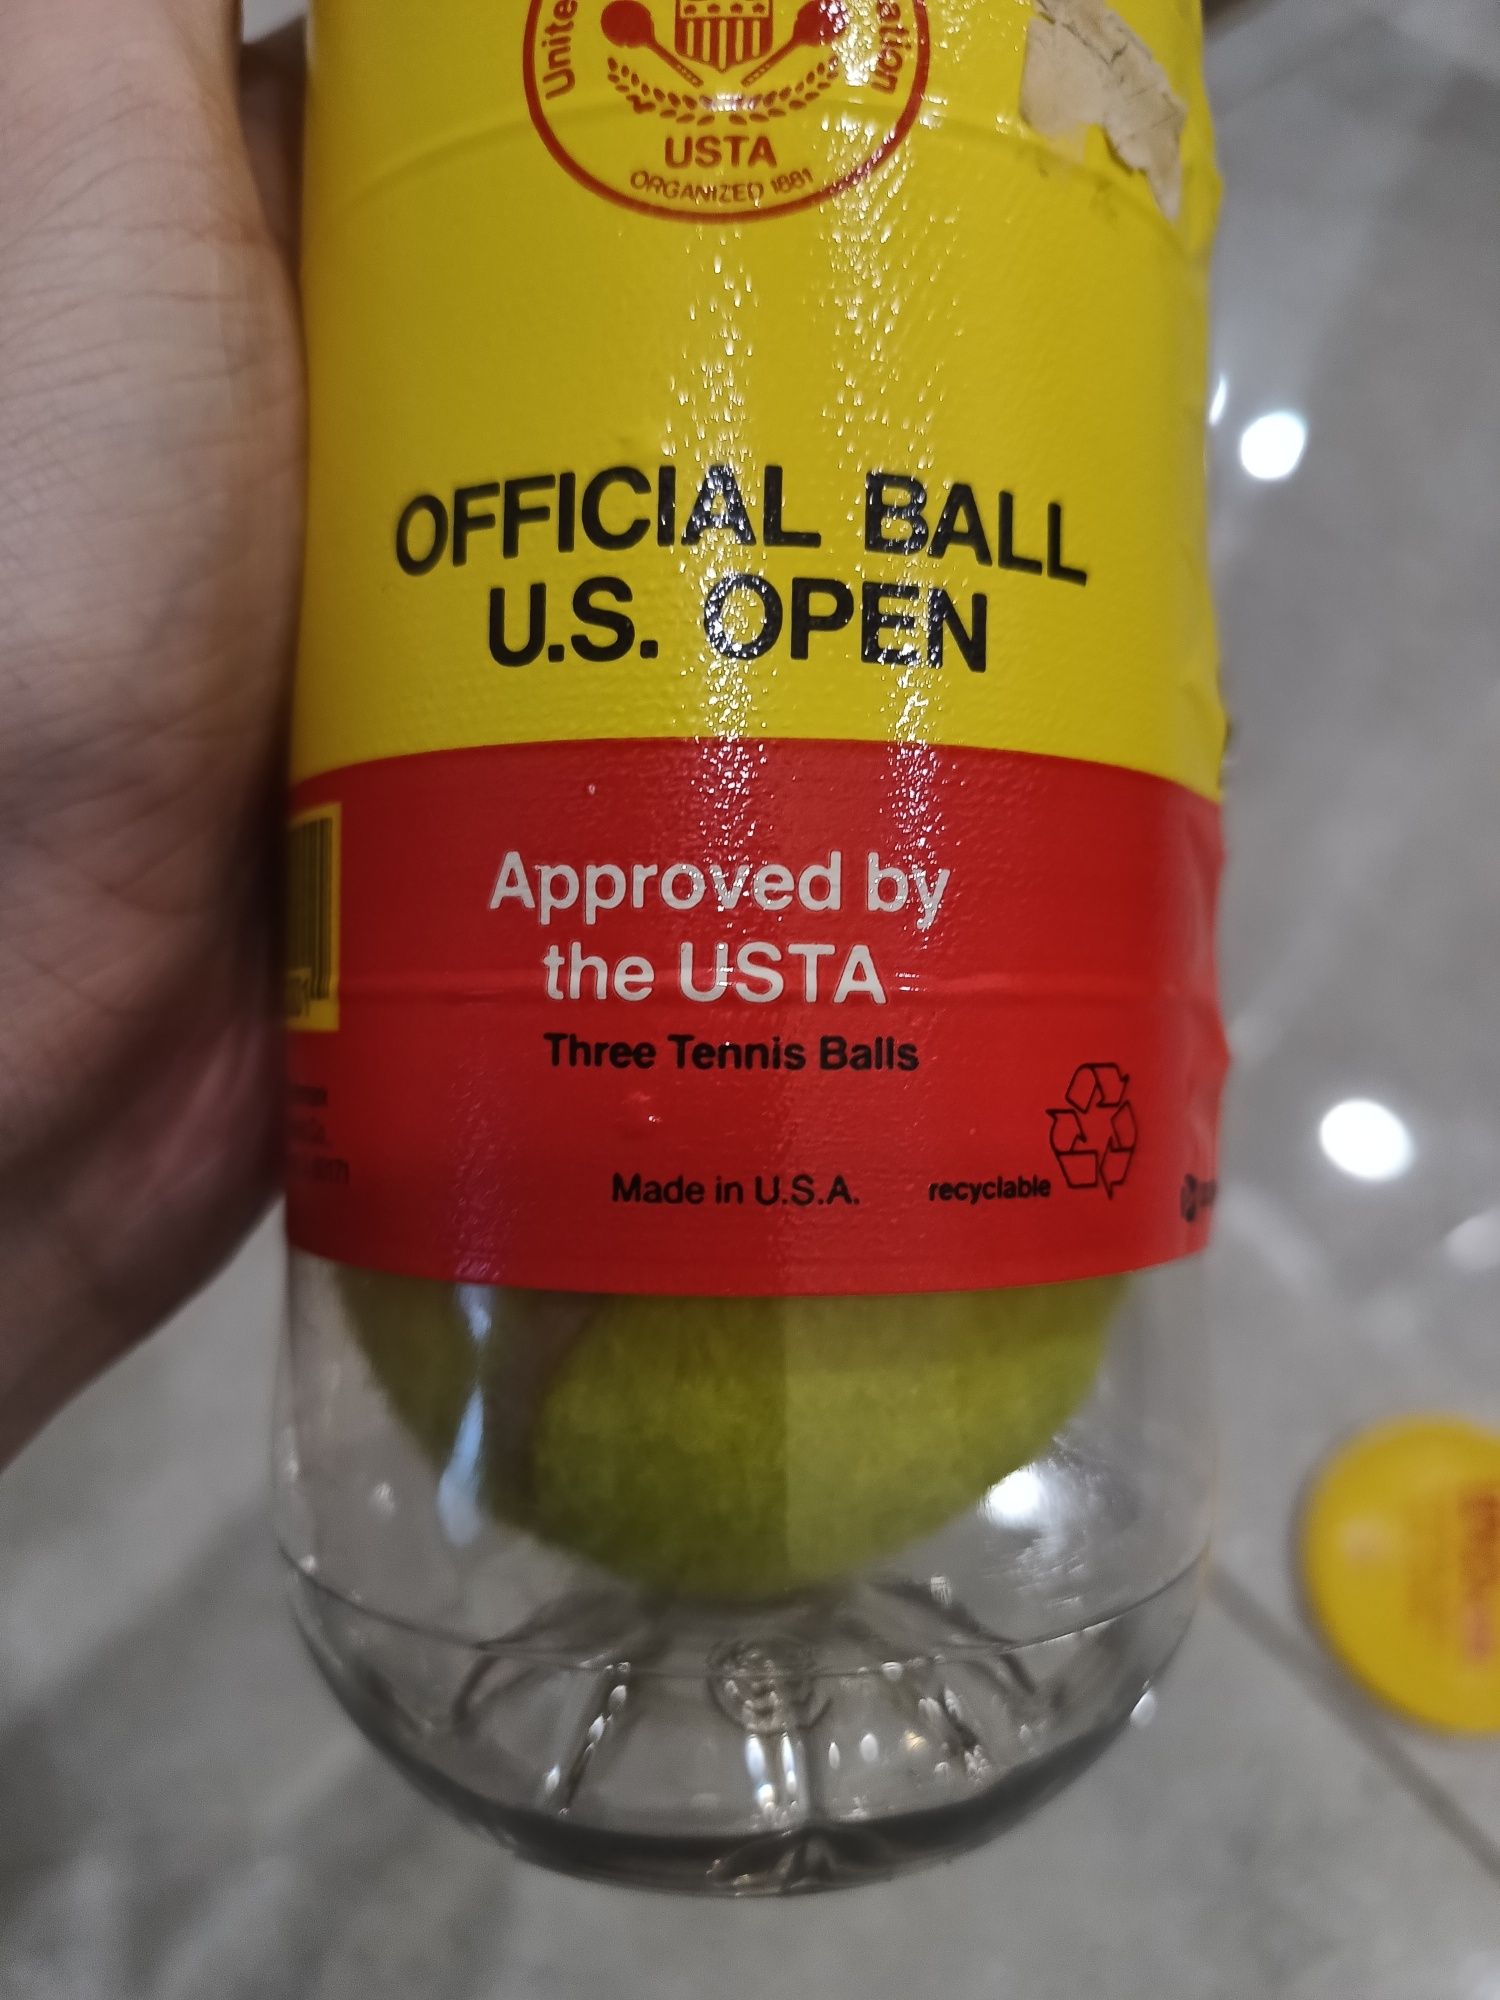 Piłki do tenisa Wilson official ball U.S. open